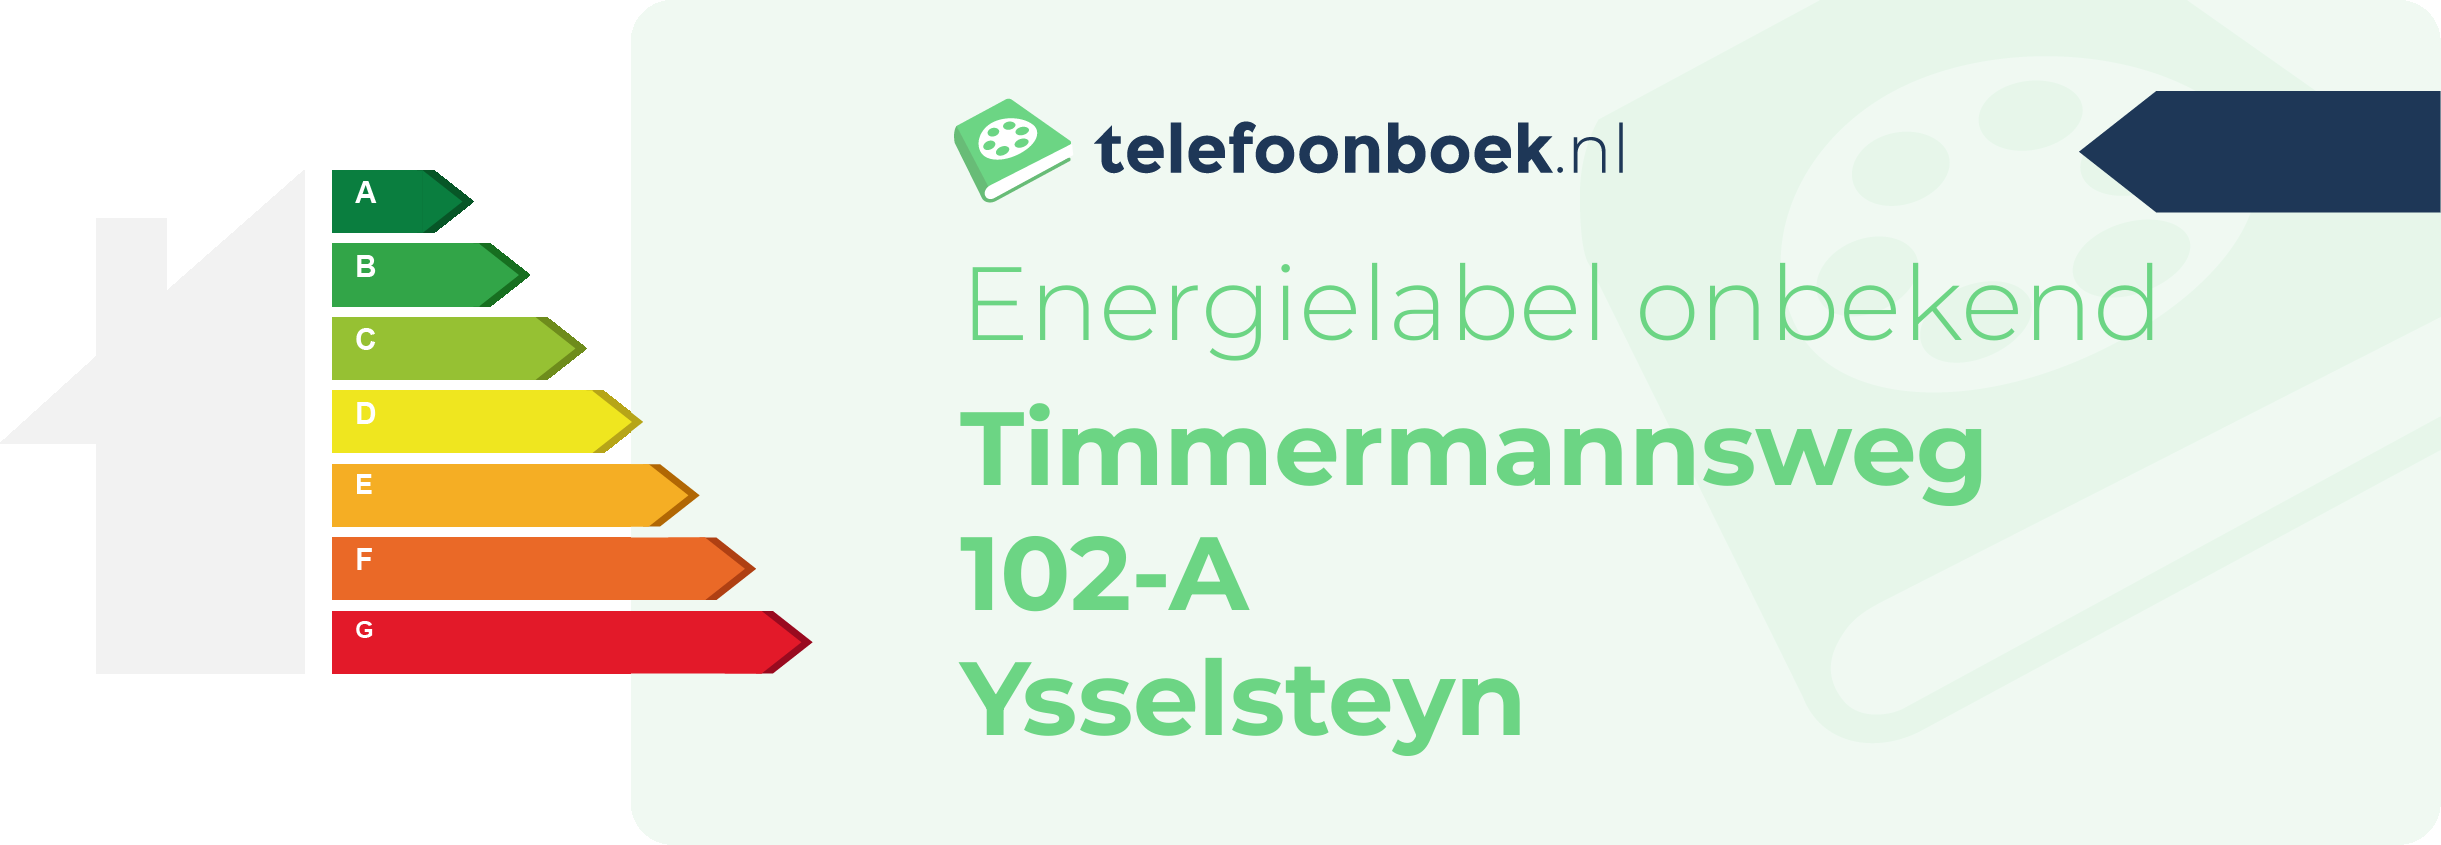 Energielabel Timmermannsweg 102-A Ysselsteyn